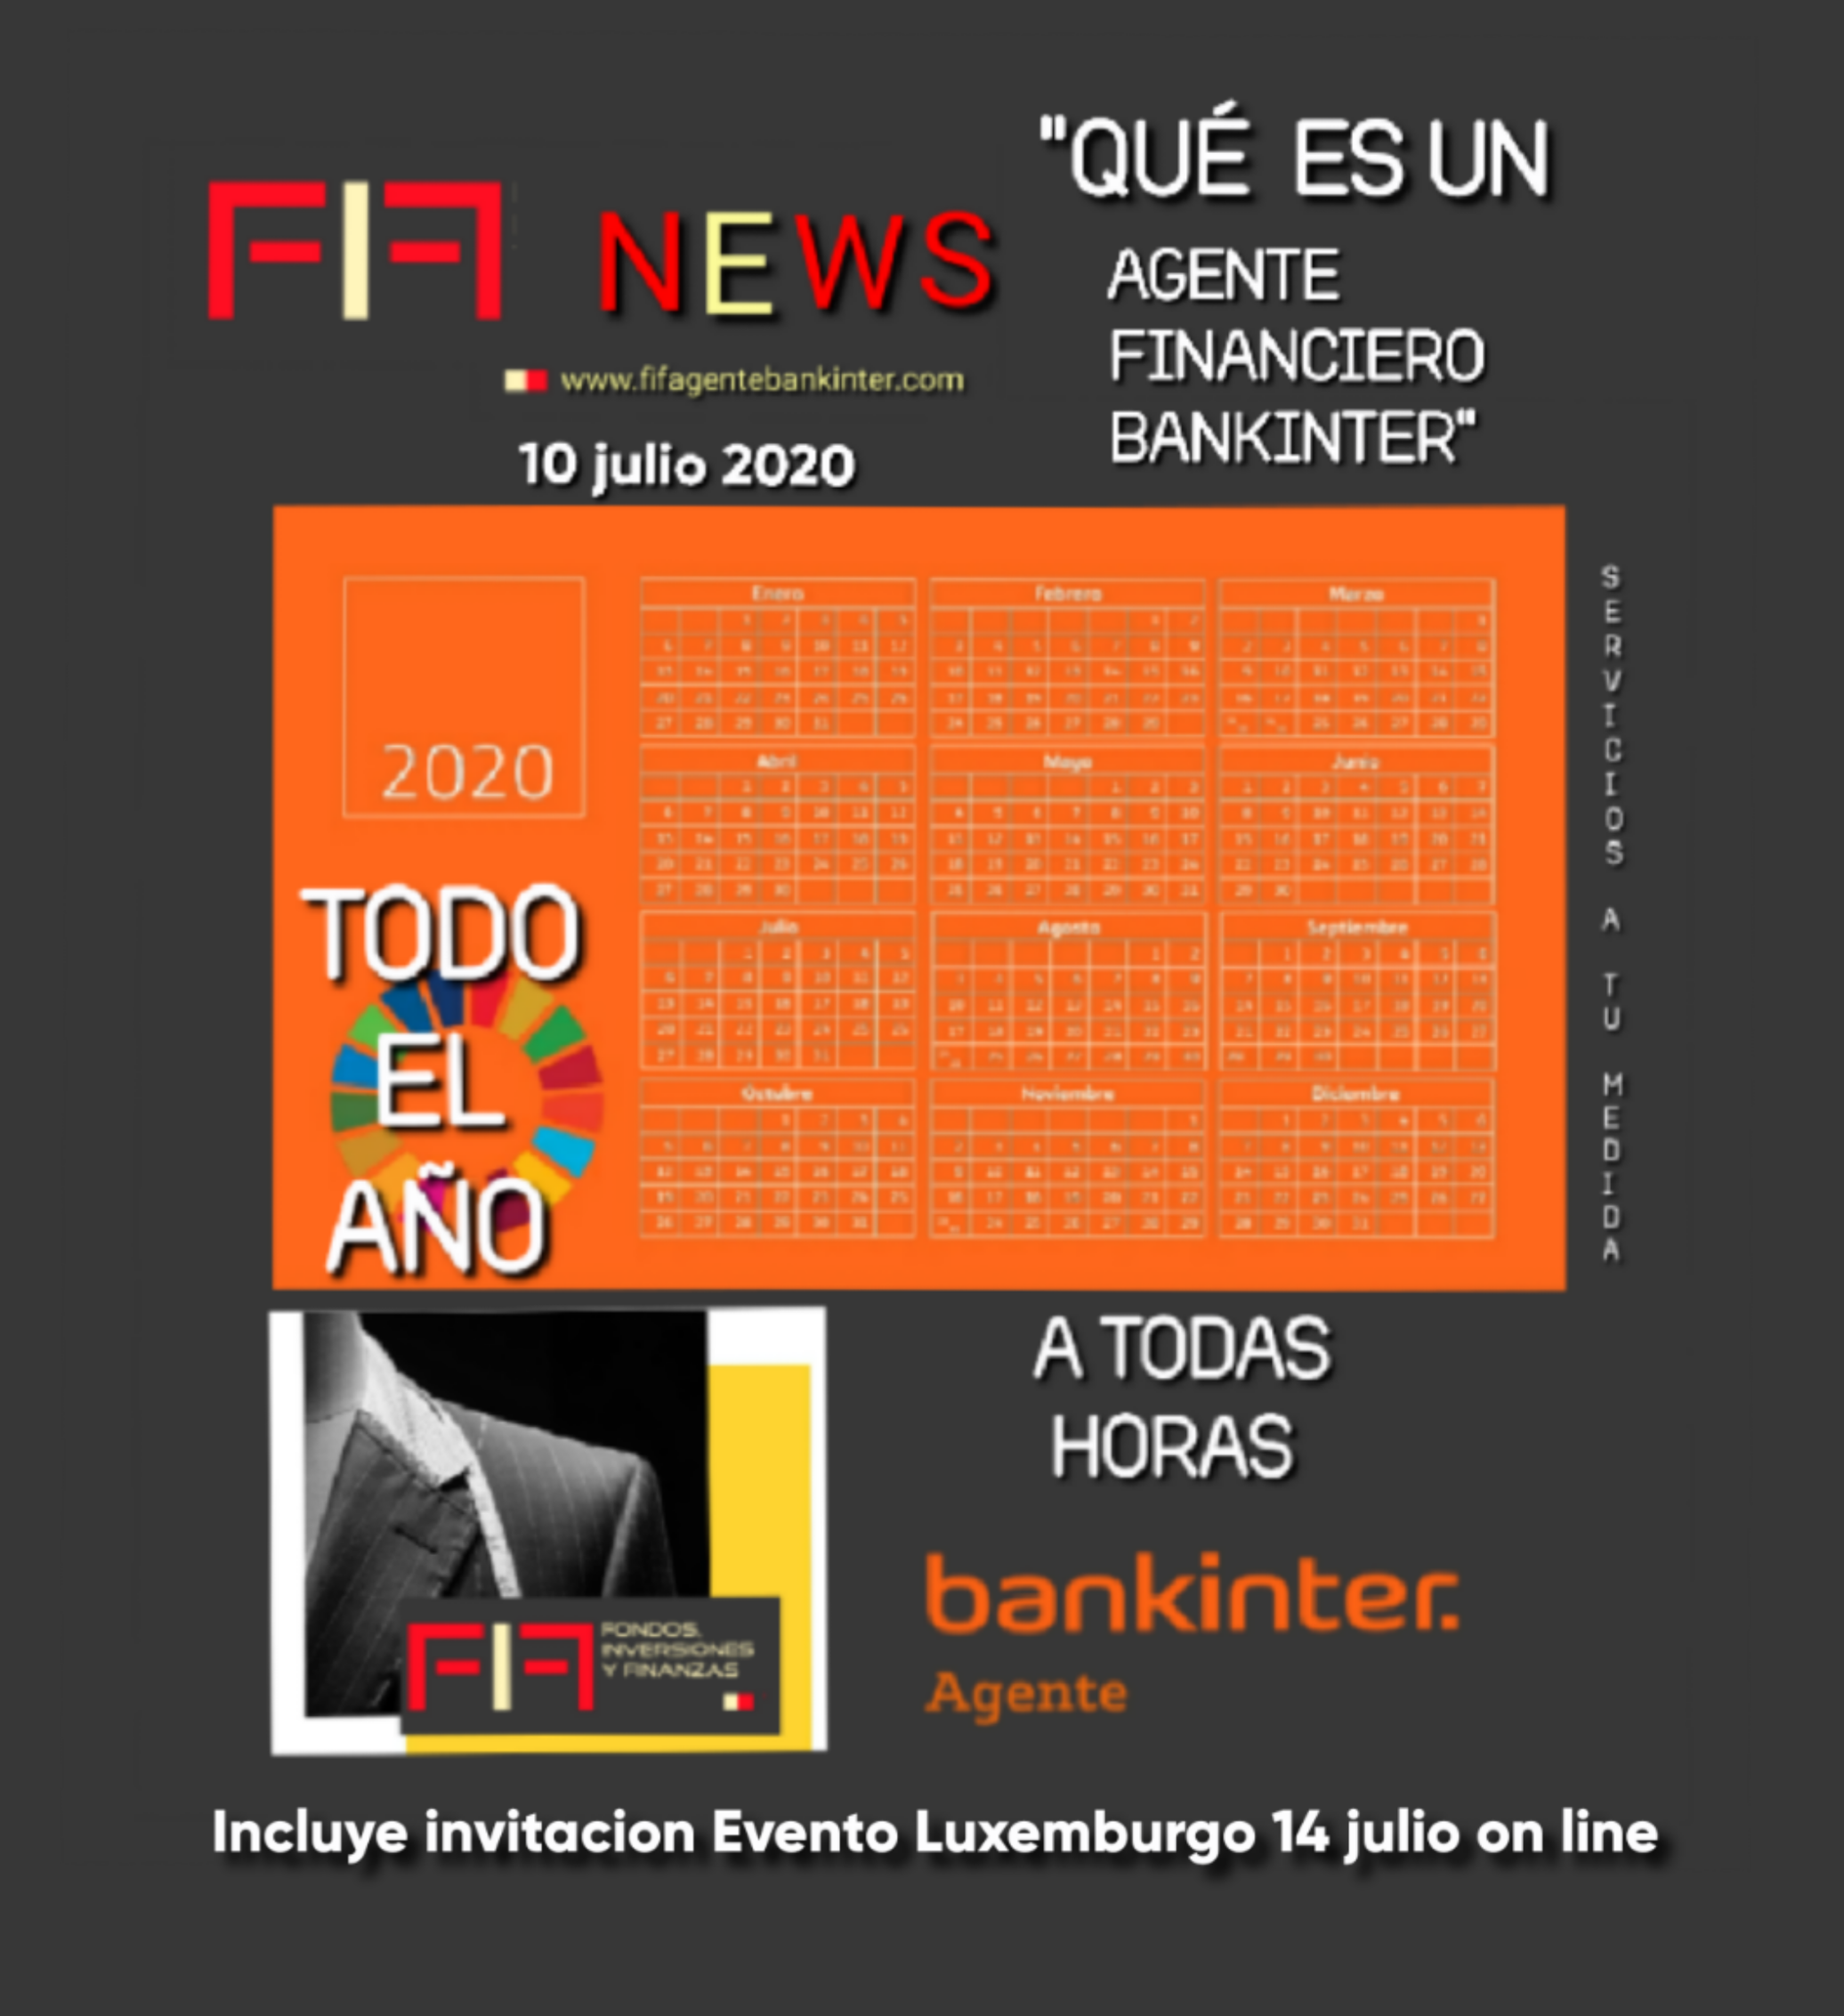 FIF NEWS 10 julio 2020: «Qué es un Agente Financiero BANKINTER?»